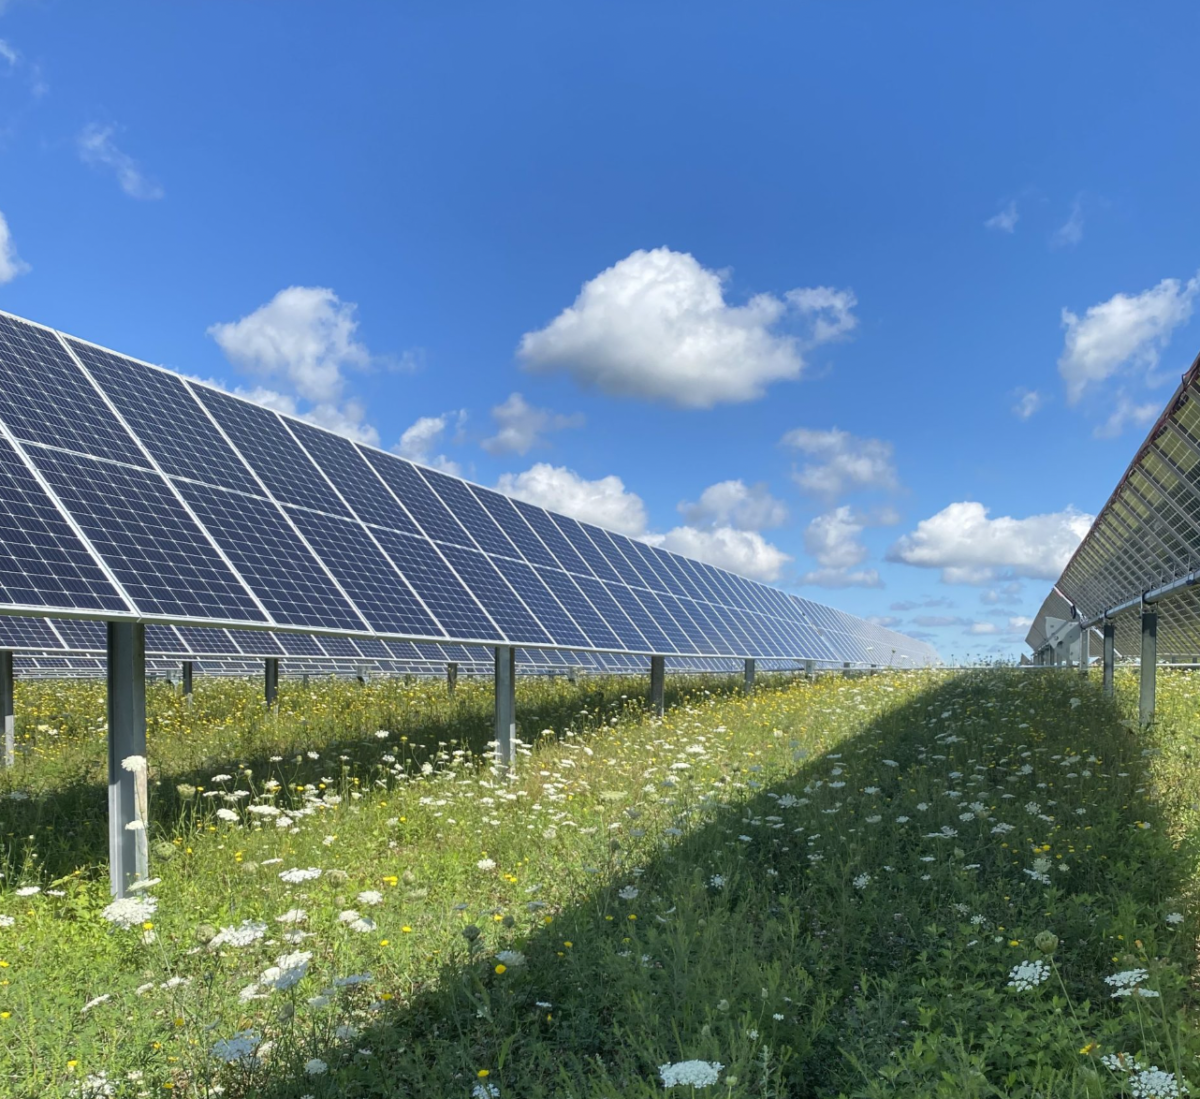 Empresa implanta placas fotovoltaicas com polinizadores para fabricação de energia solar e crescimento de plantas: "eletricidade 100% livre de carbono até 2040"